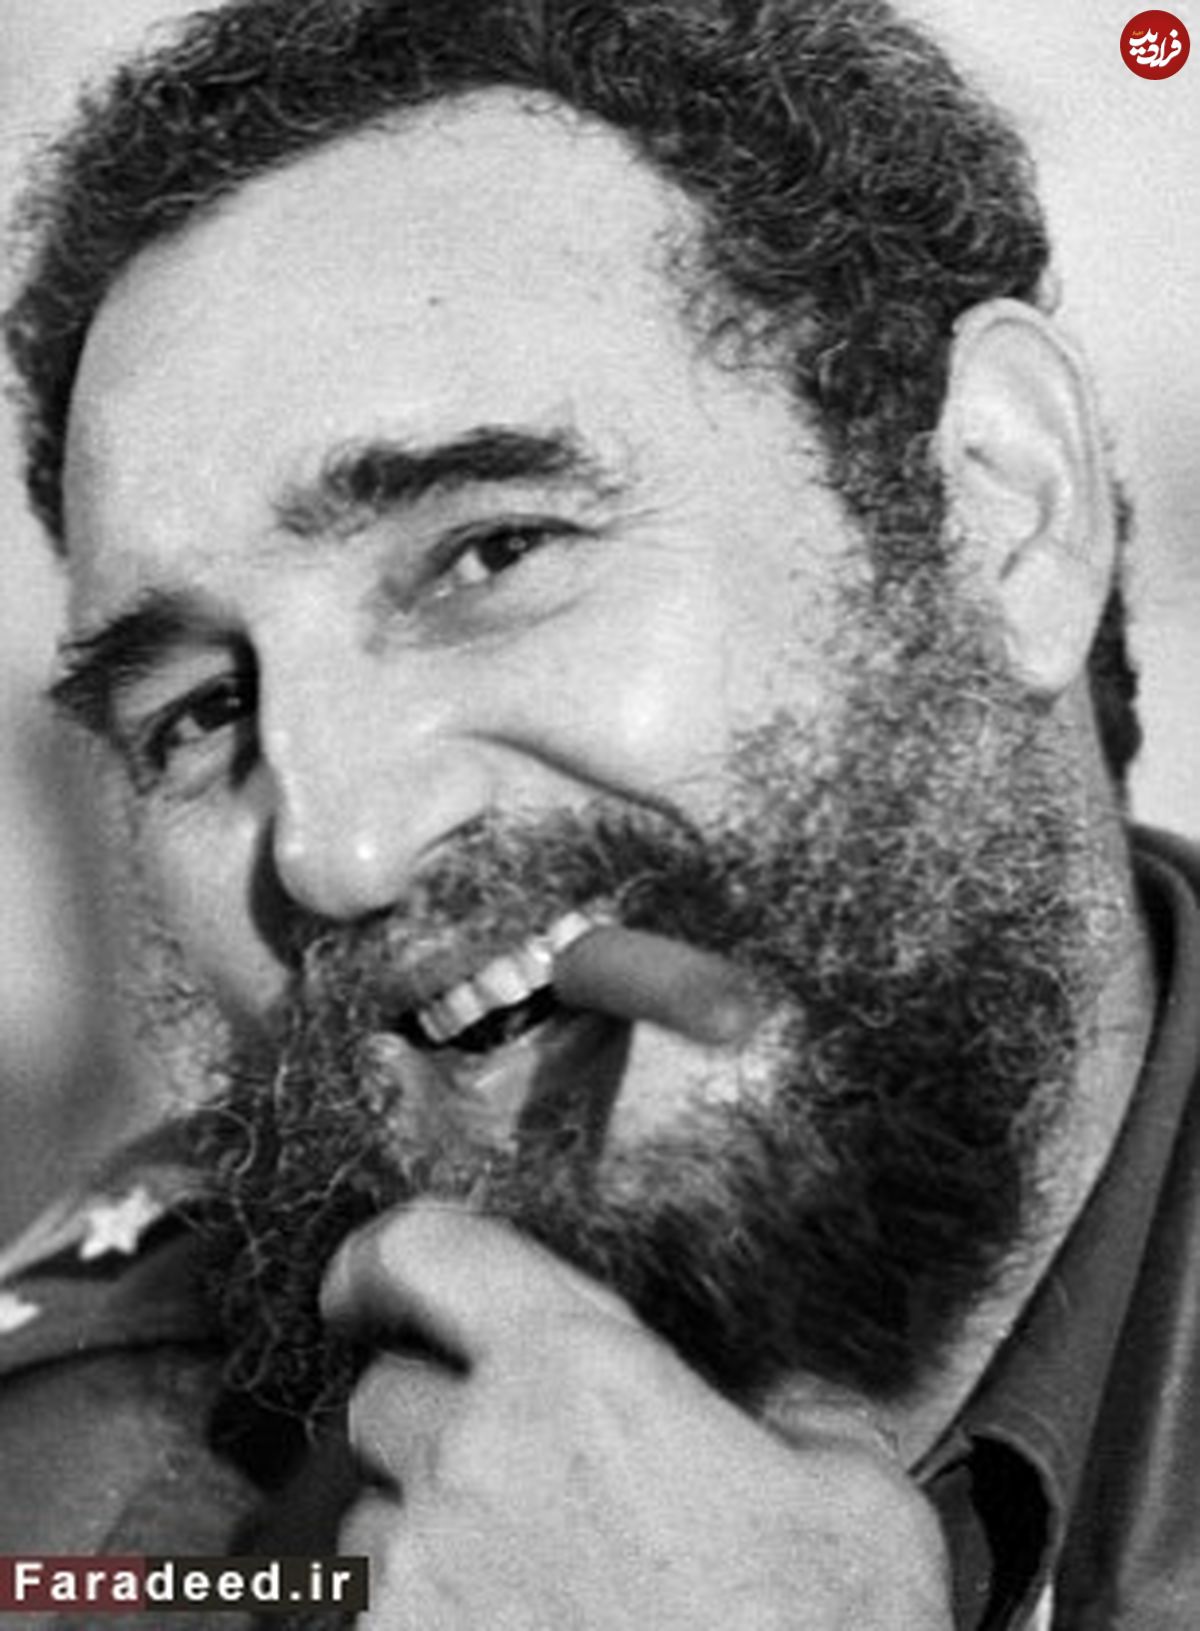 روی دیگر زندگی رهبر انقلاب کوبا